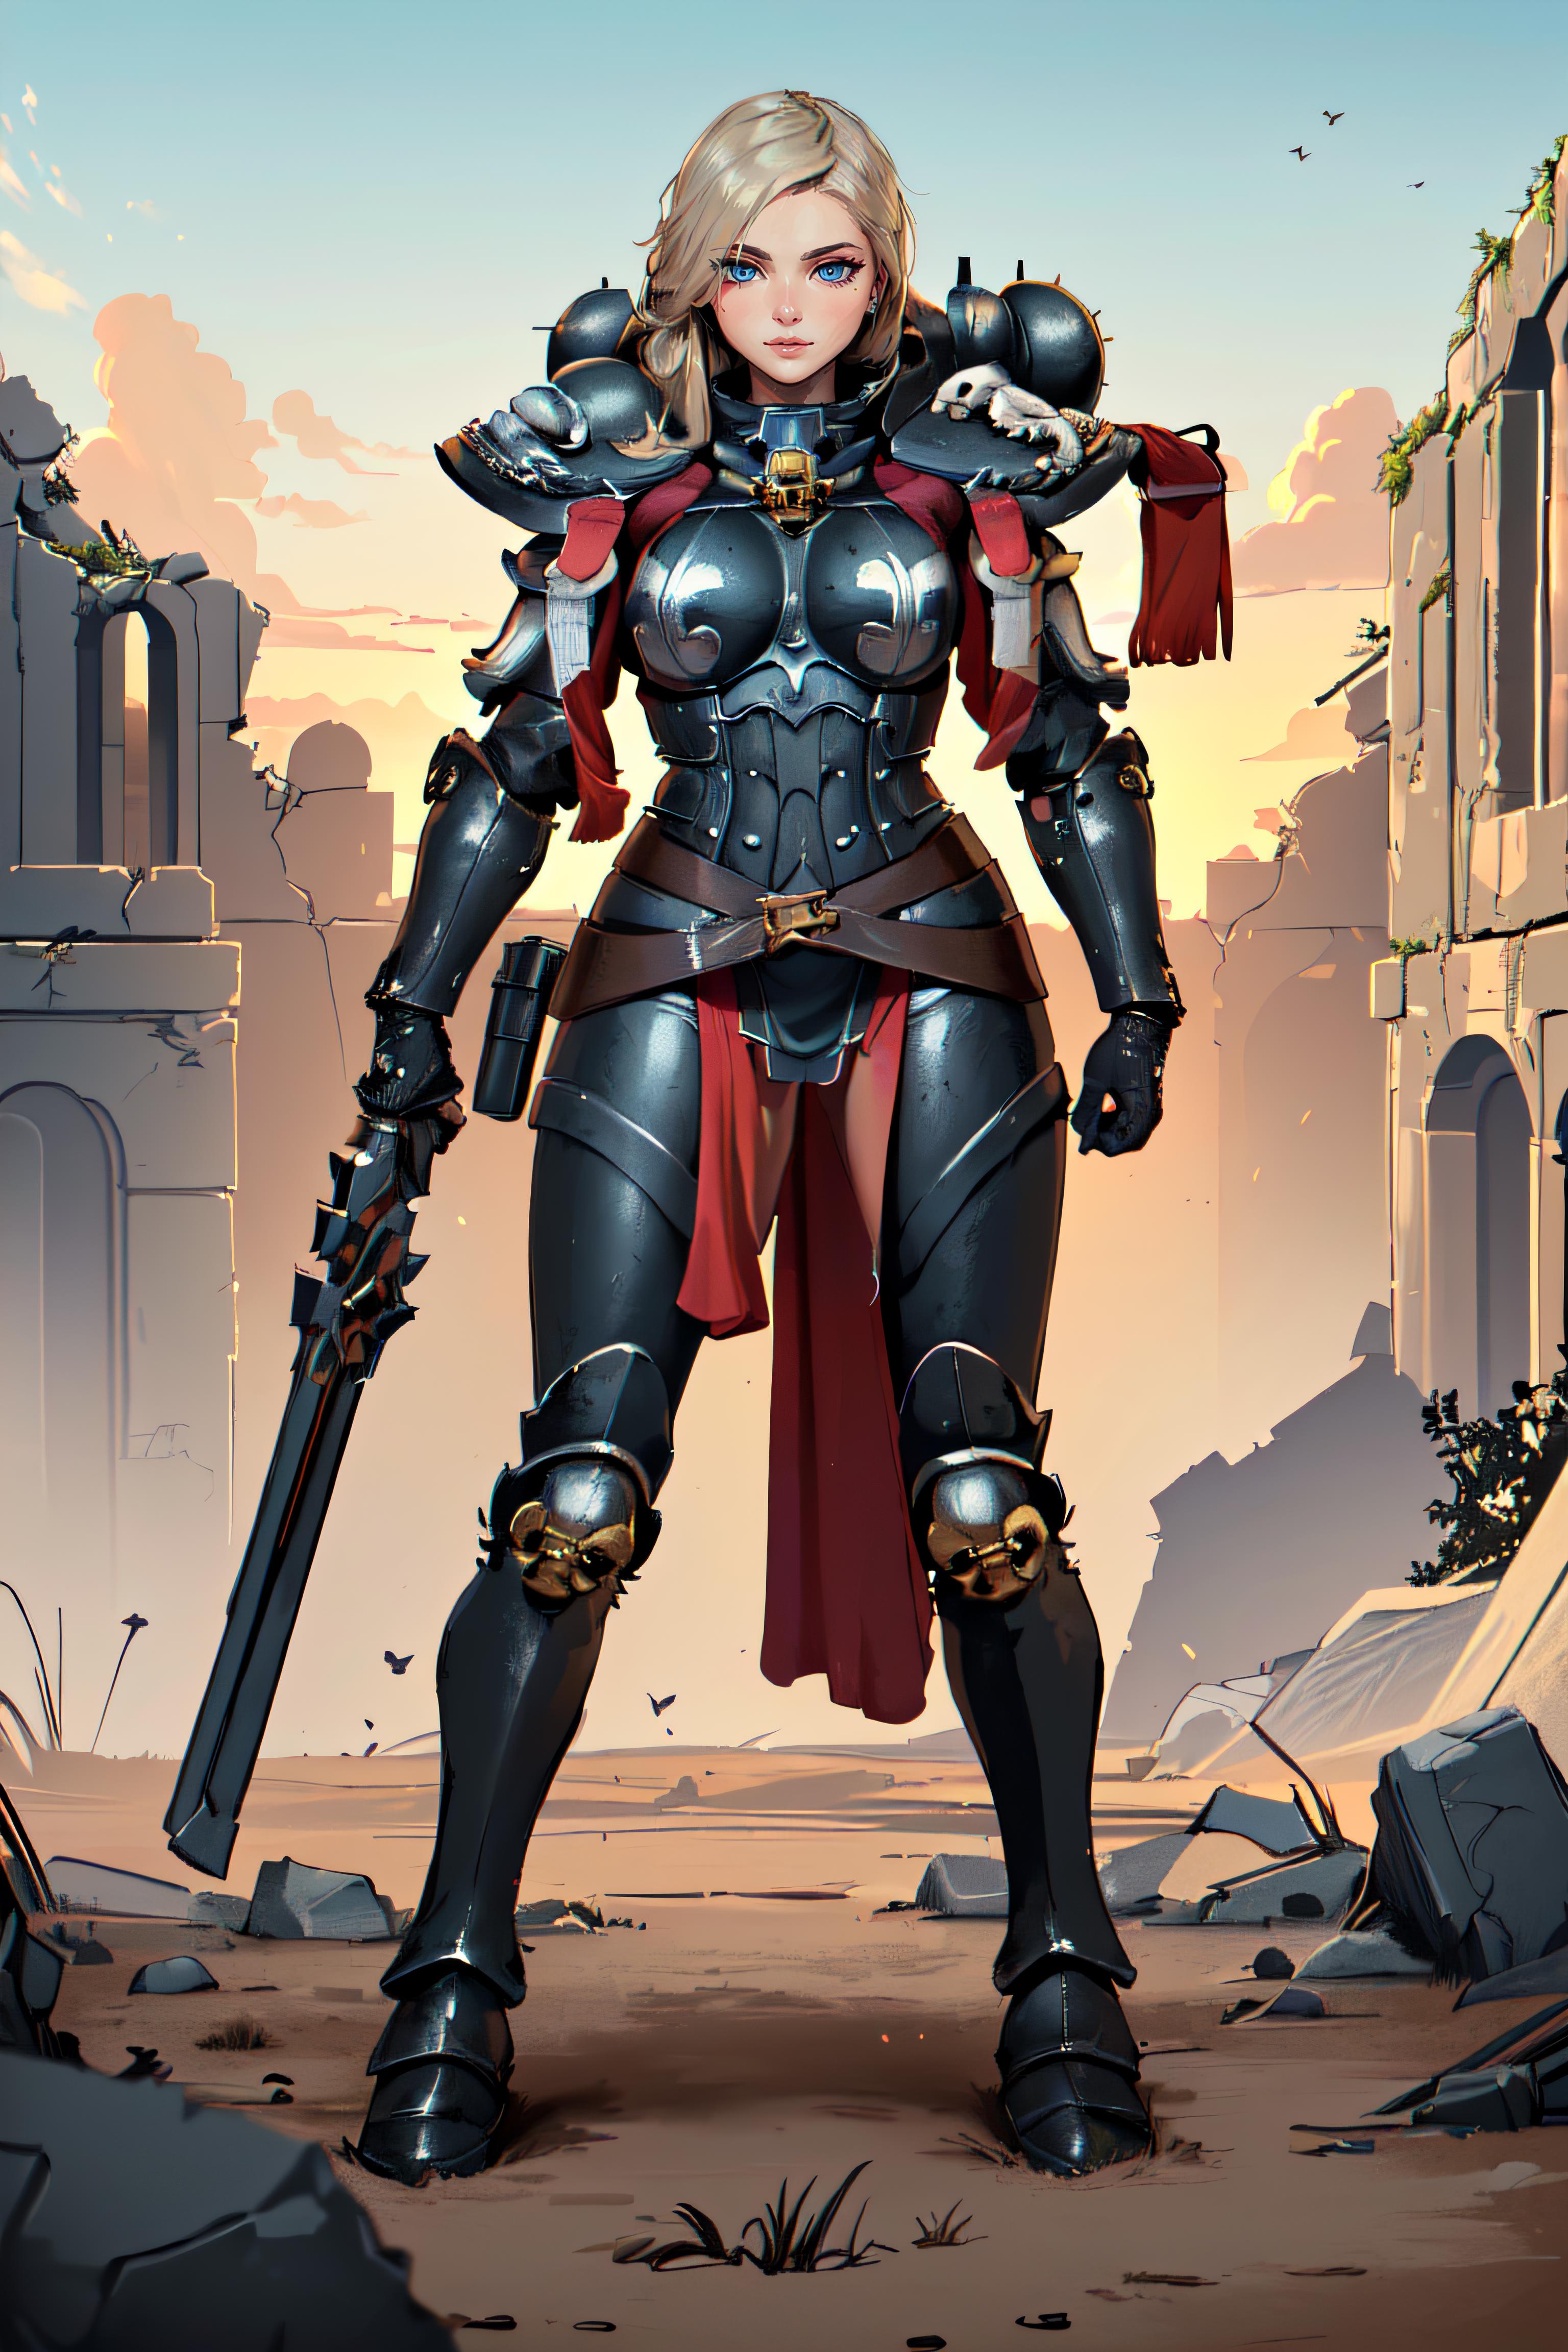 Warhammer 40K Adepta Sororitas Sister of Battle armor - by EDG image by betweenspectrums